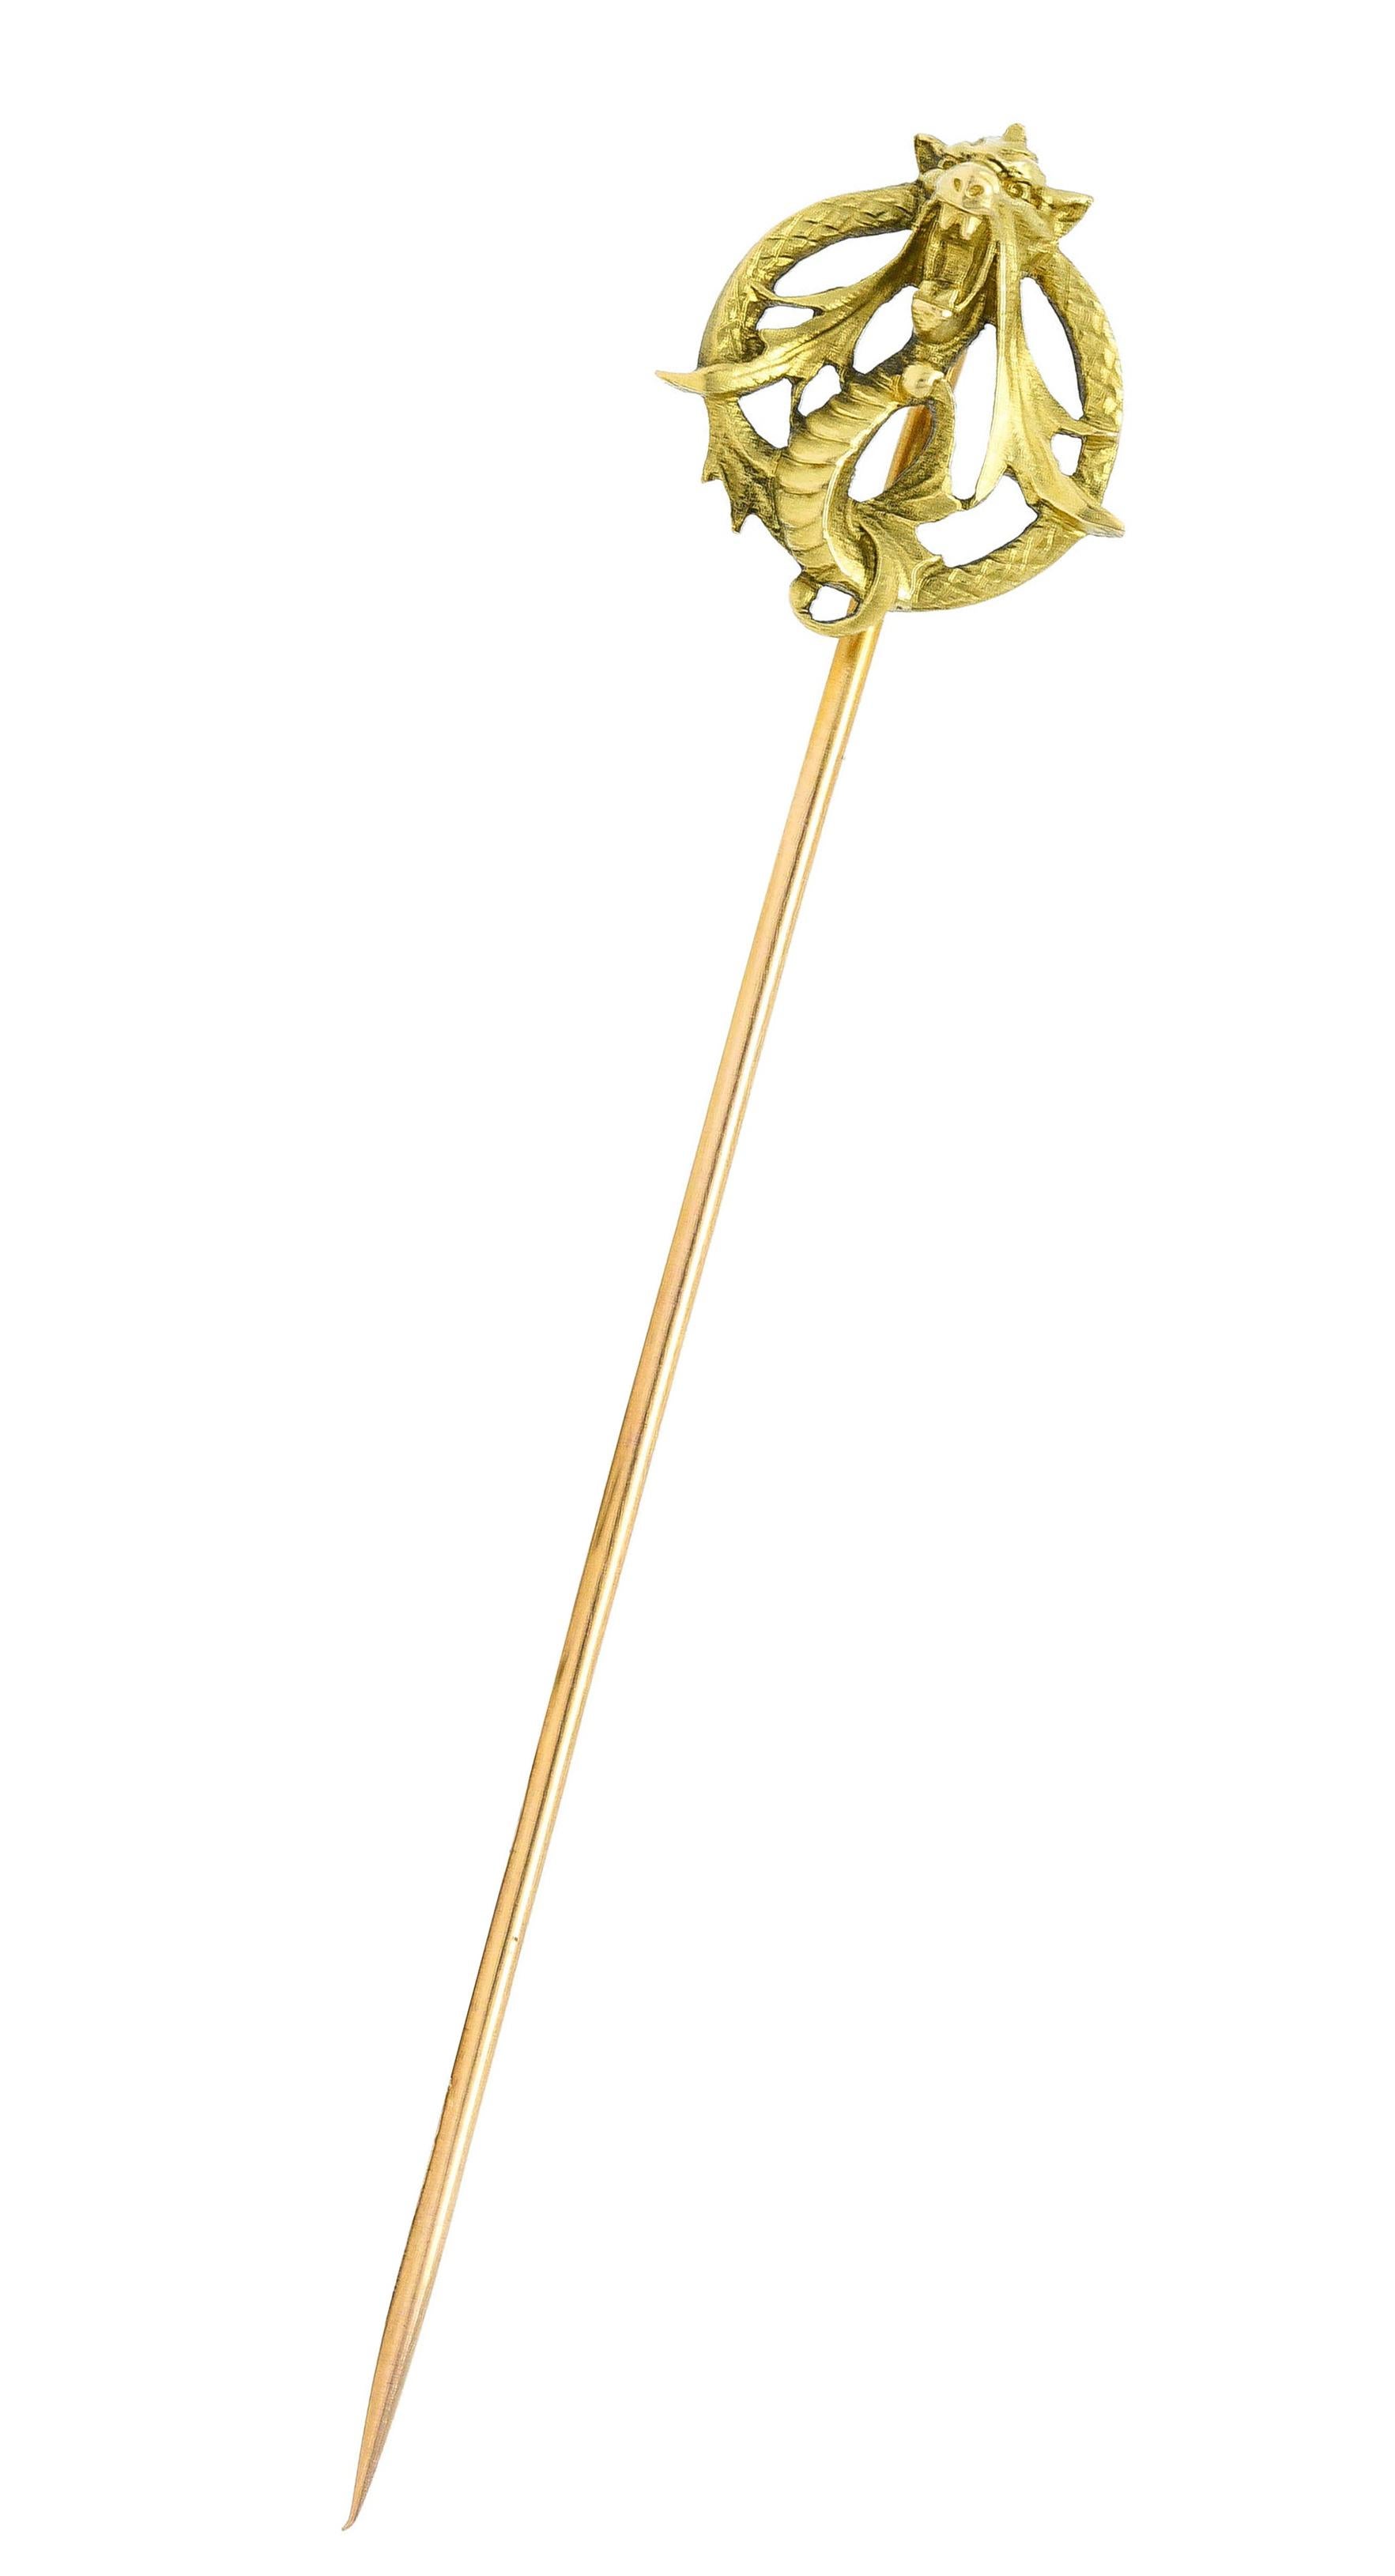 Darstellung eines grün-goldenen Schlangendrachens, der sich in einem Kreis windet

Stilisierte Peitschenschwingen und schraffierte Schuppen

Französisches Prüfzeichen für 18-karätiges Gold

Nummeriert mit französischer Herstellermarke

Um: